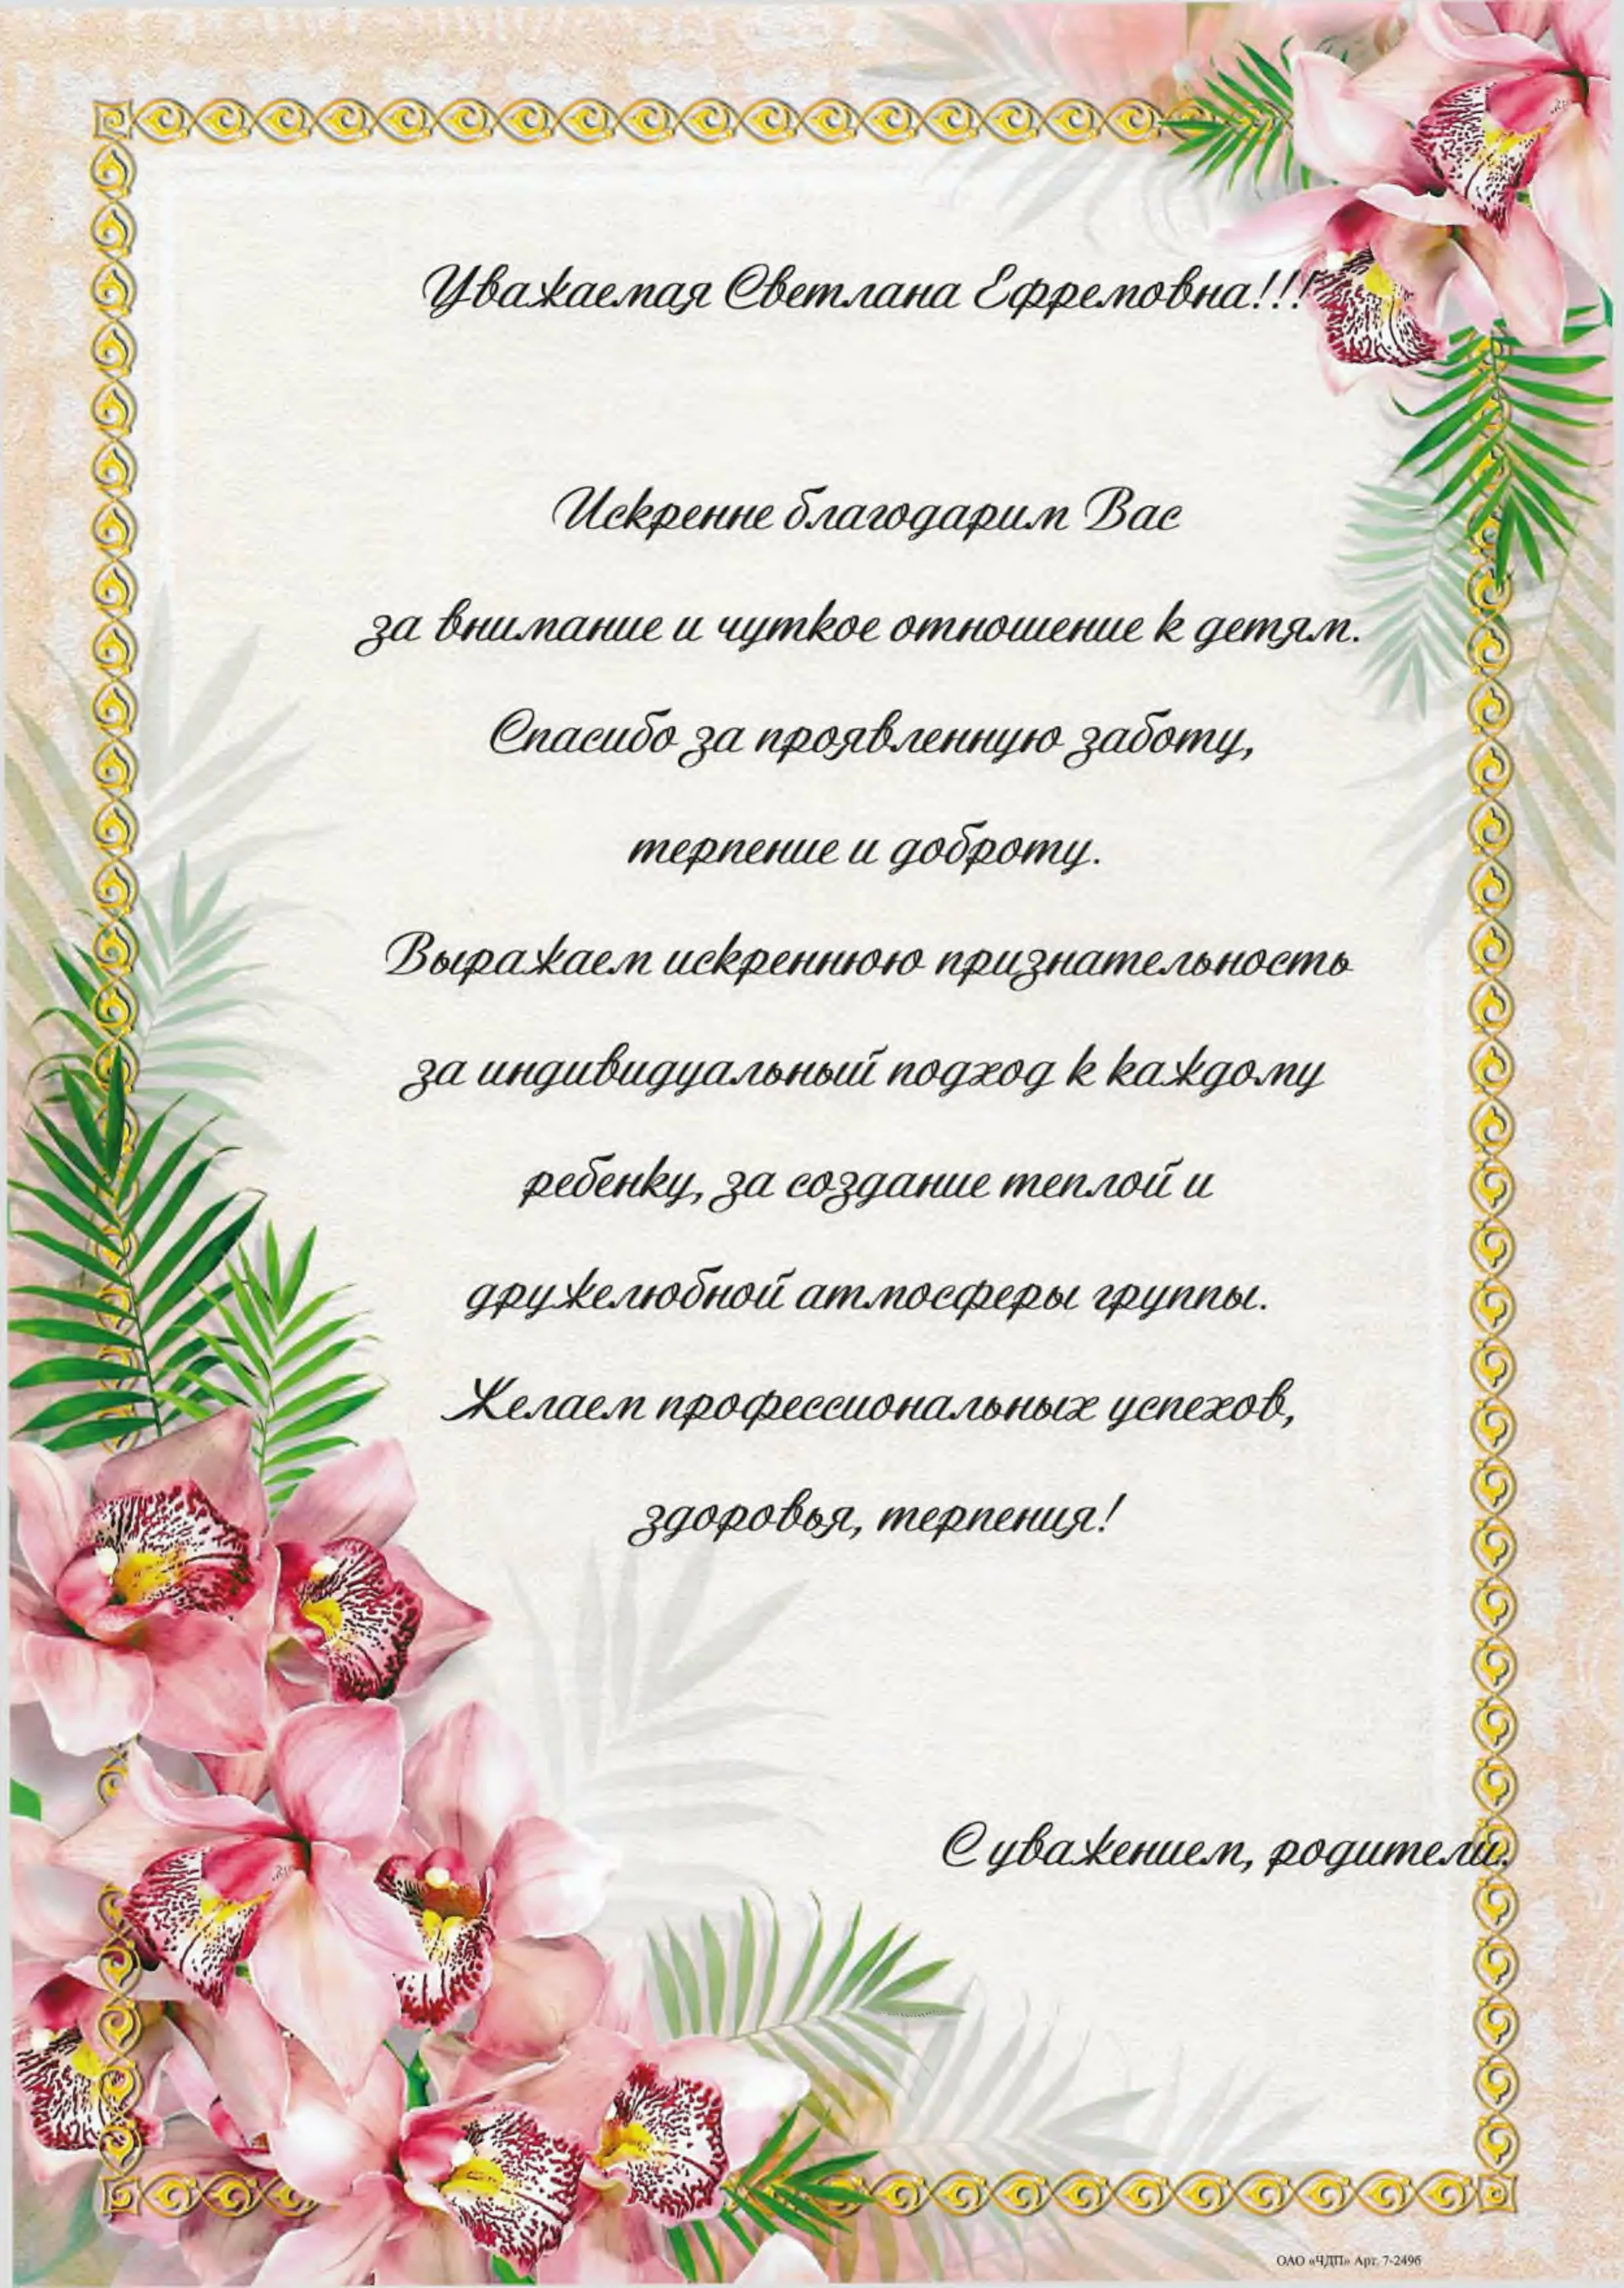 Фото Стихи и слова благодарности на свадьбе от жениха #65